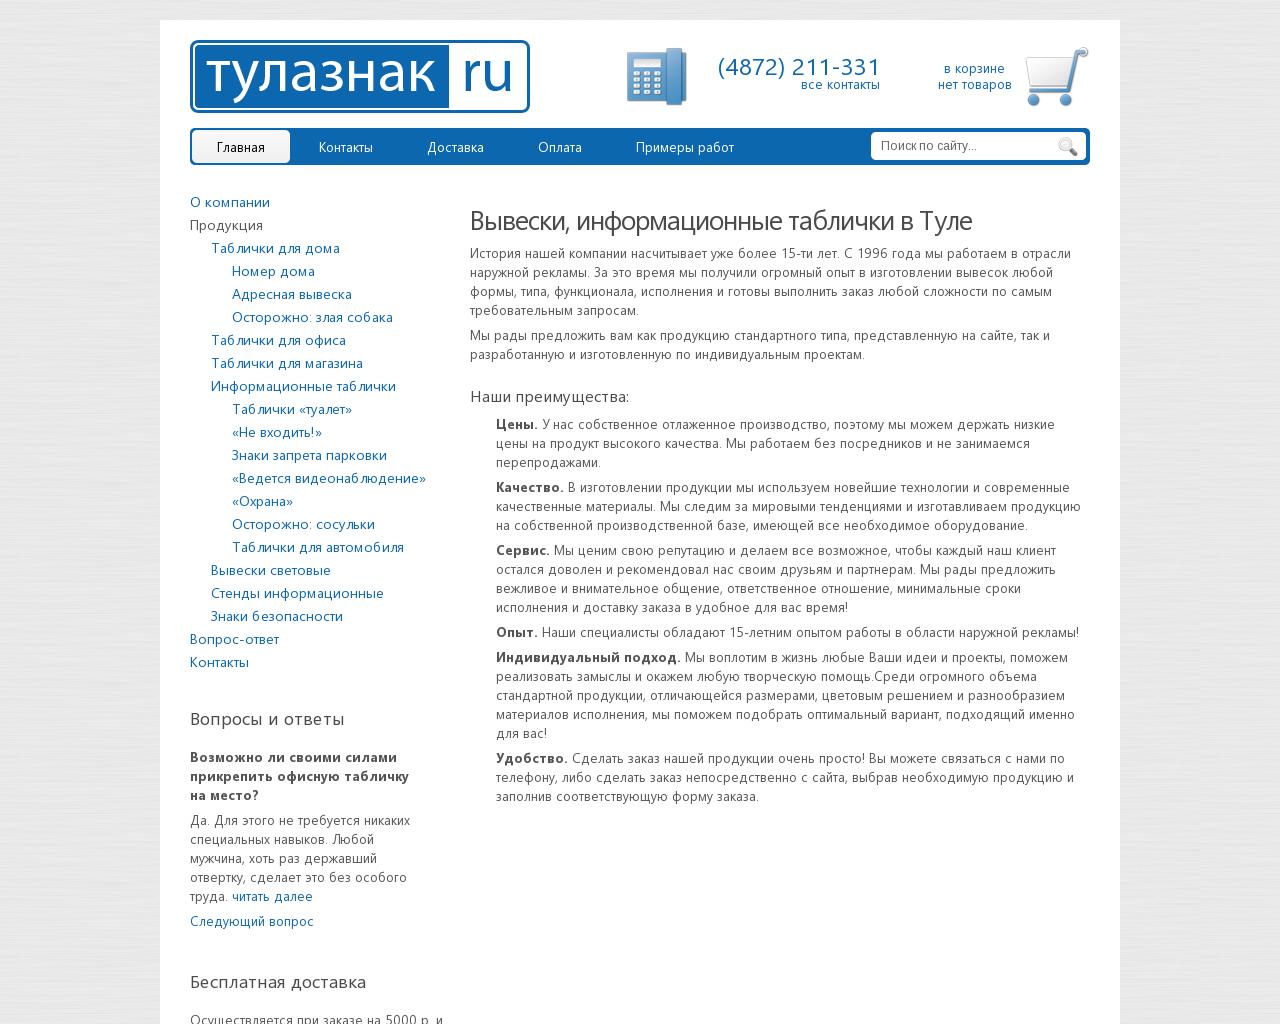 Изображение сайта tulaznak.ru в разрешении 1280x1024